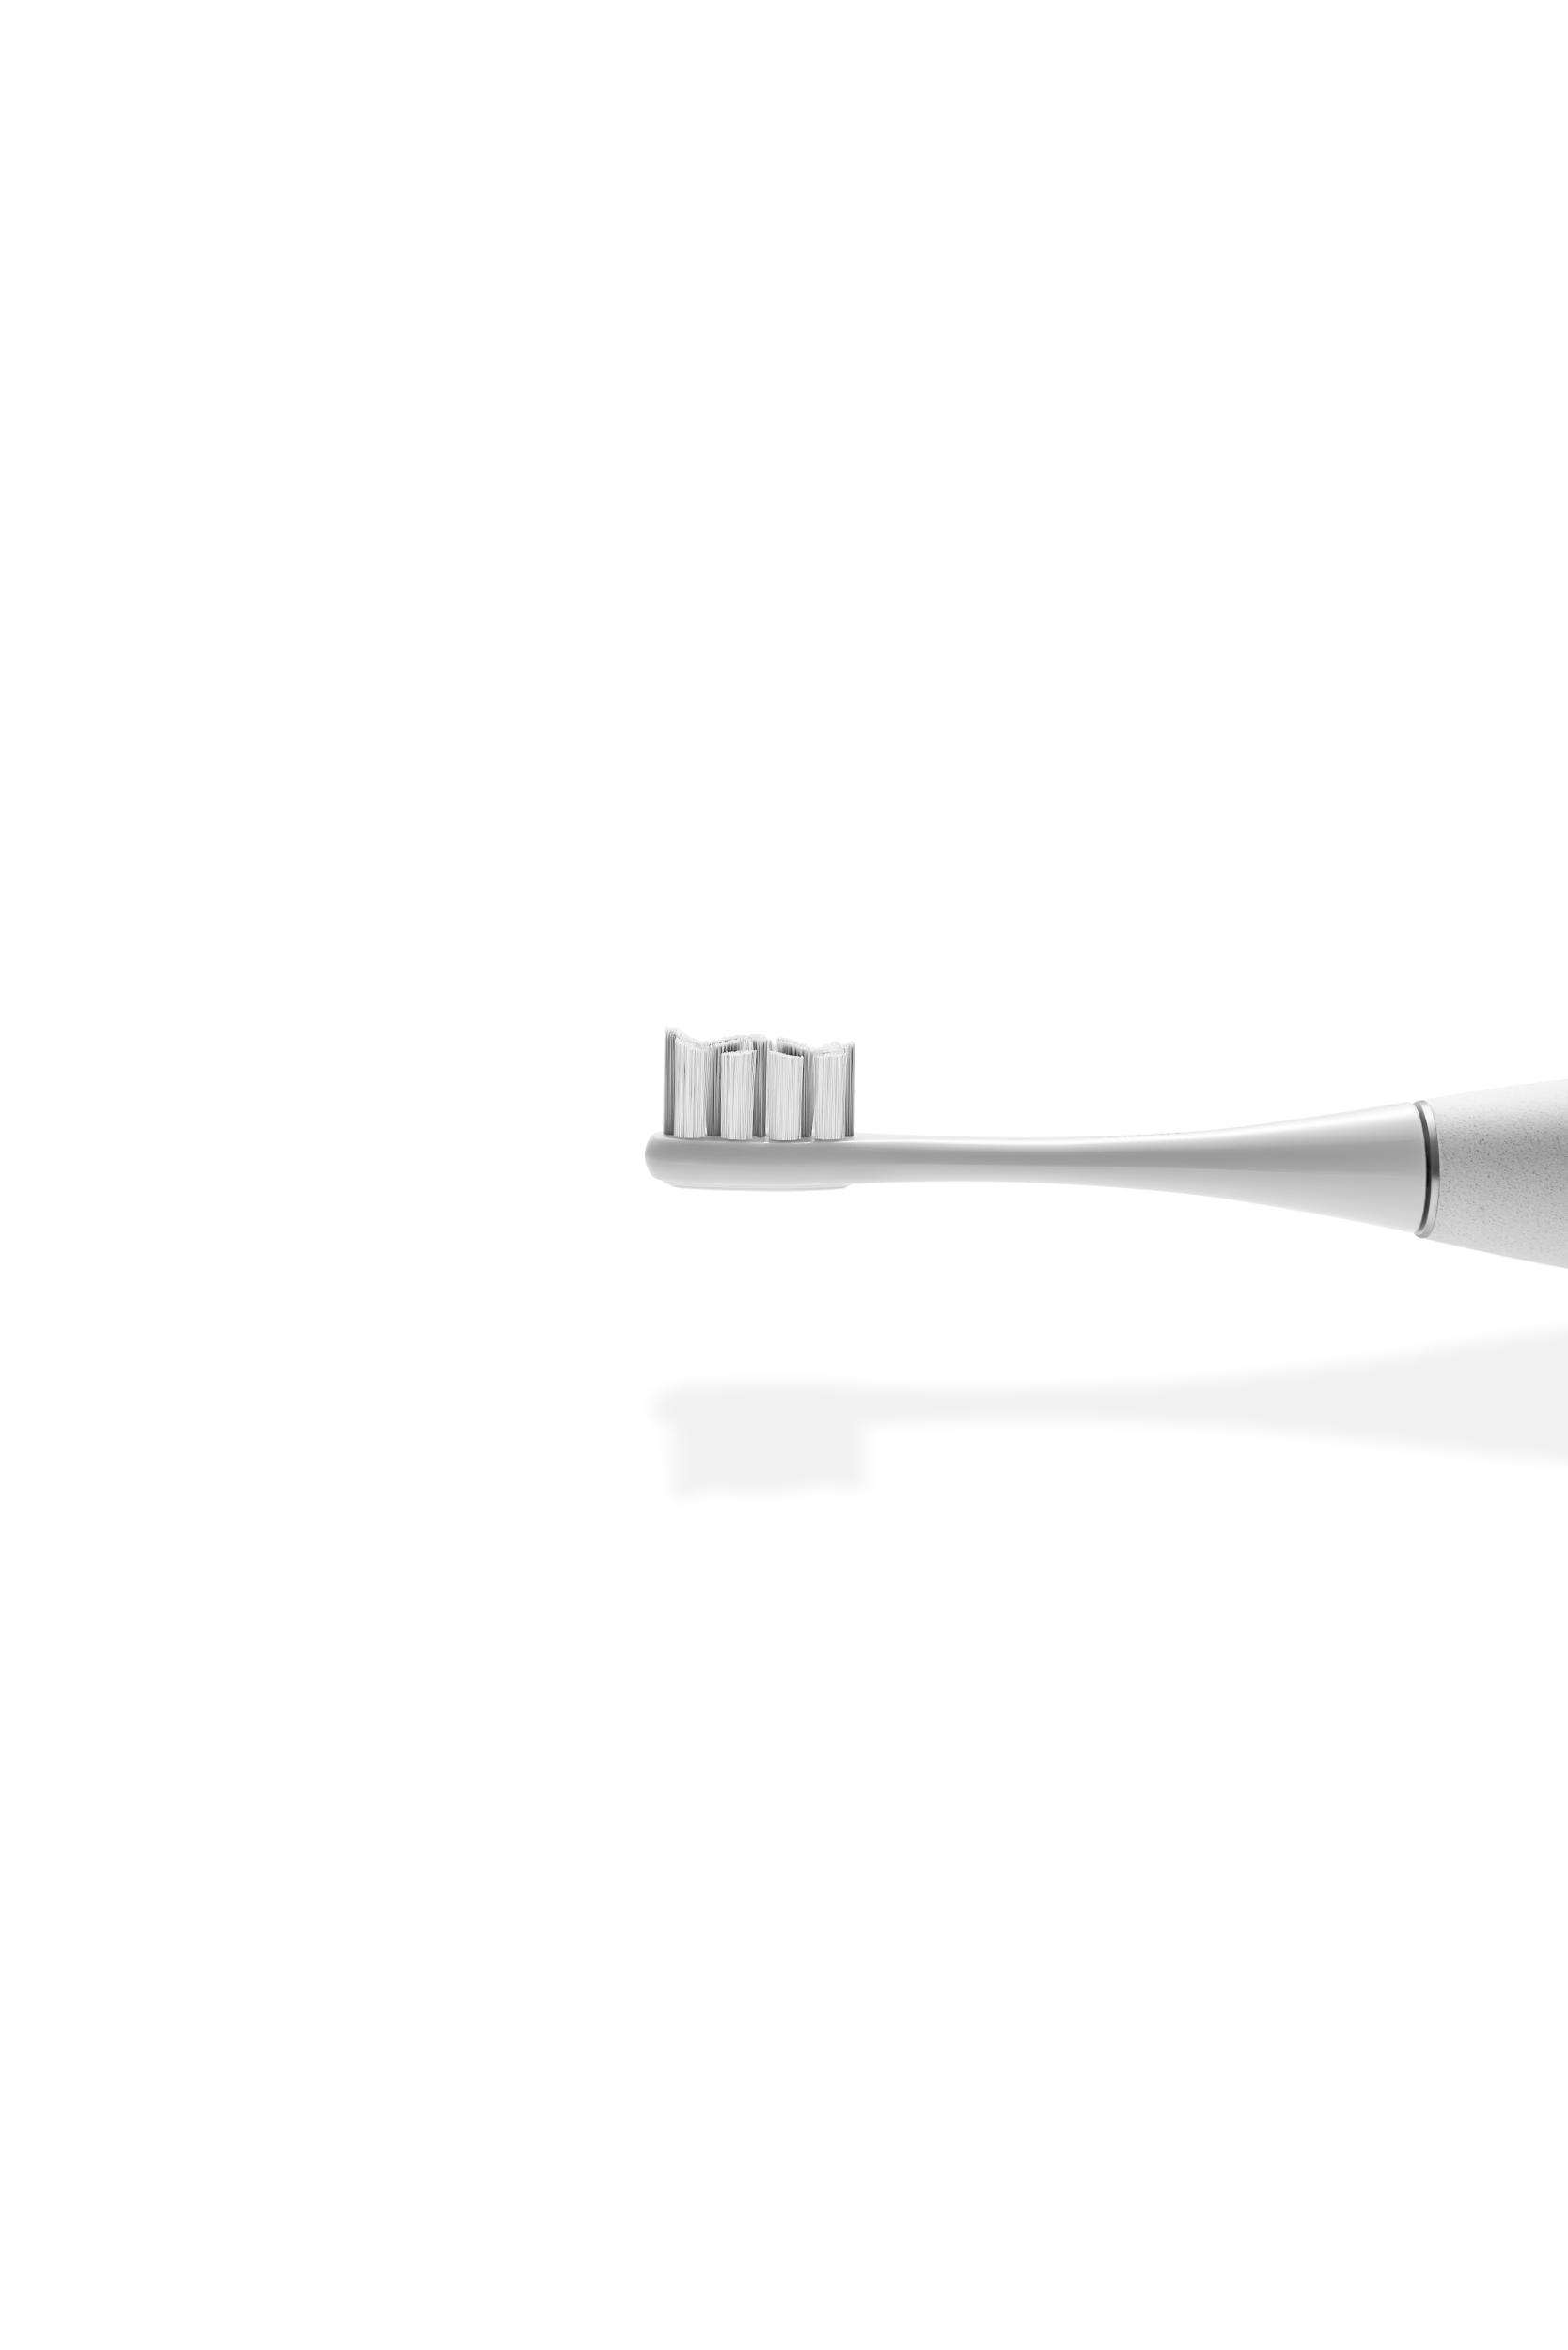 OCLEAN C01000281 Grey Elektrische Zahnbürste X Elite Pro